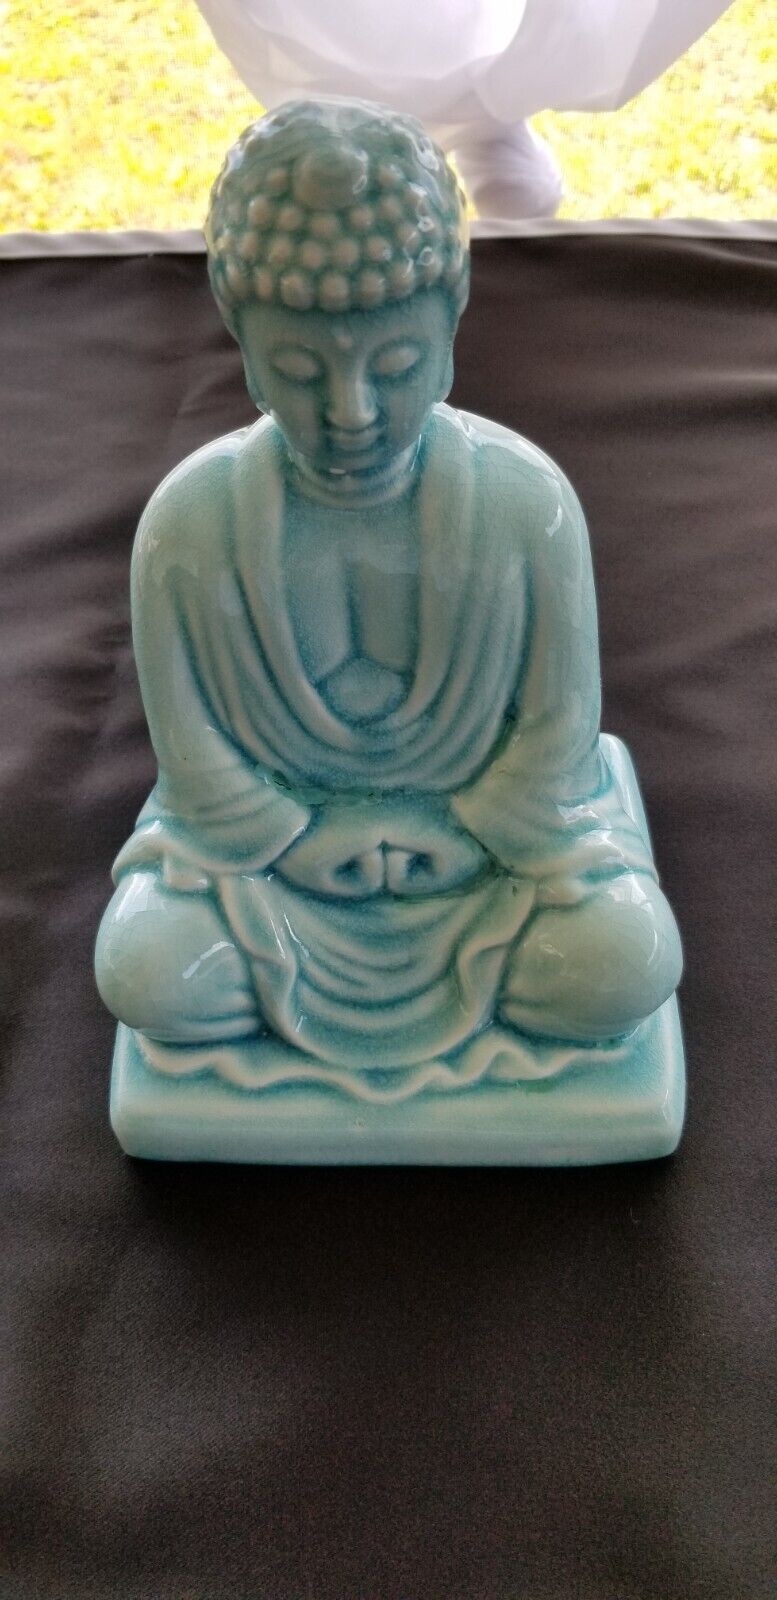 New Small Medium Buddha Sitting Meditating Buddha Statue New Small Medium Buddha